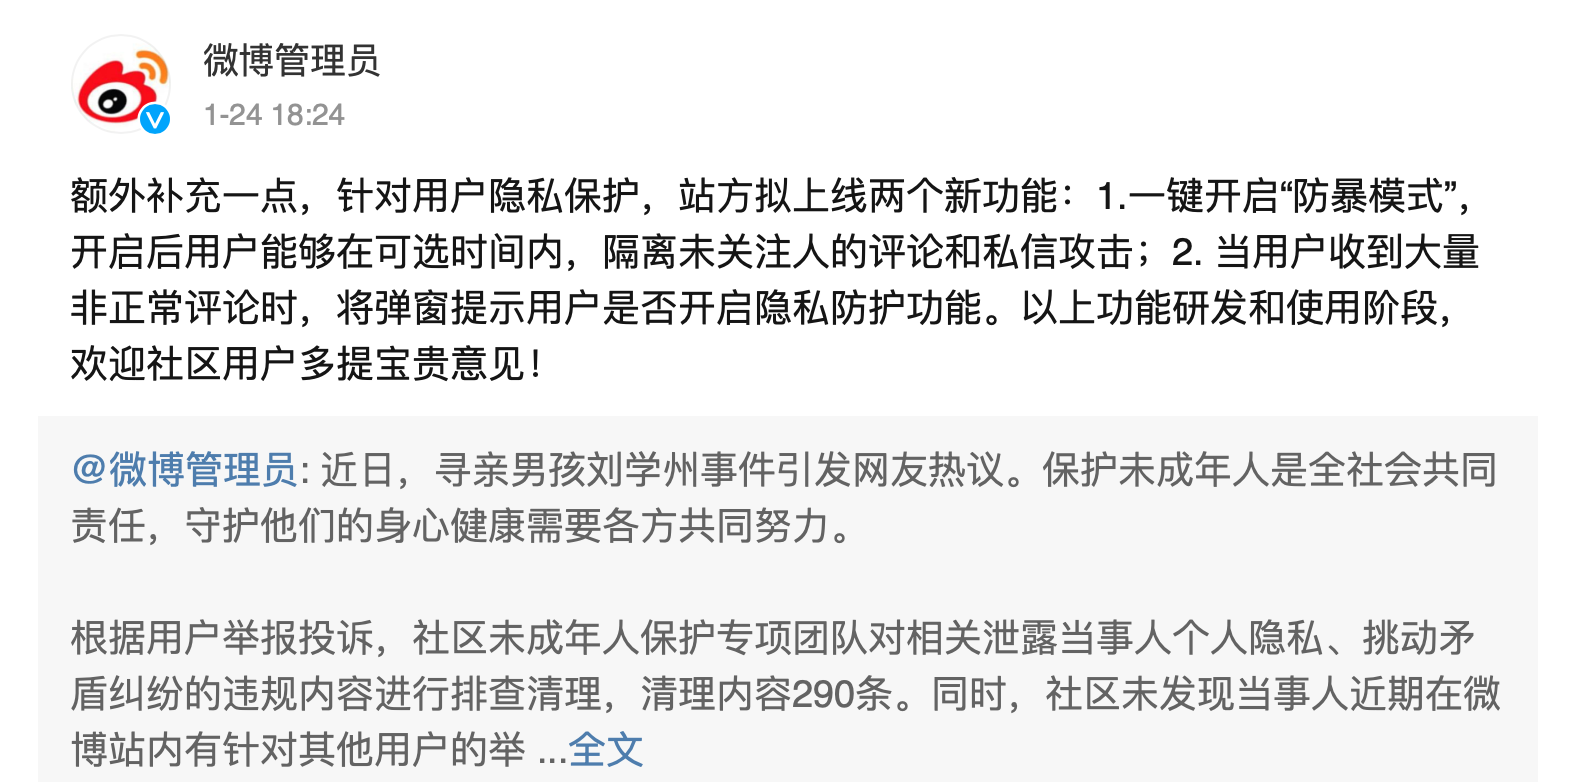 fangbao - Le nuove funzioni che Weibo, Douban e Douyin stanno svolgendo hanno finalmente reso la cyber-violenza non più irrisolta